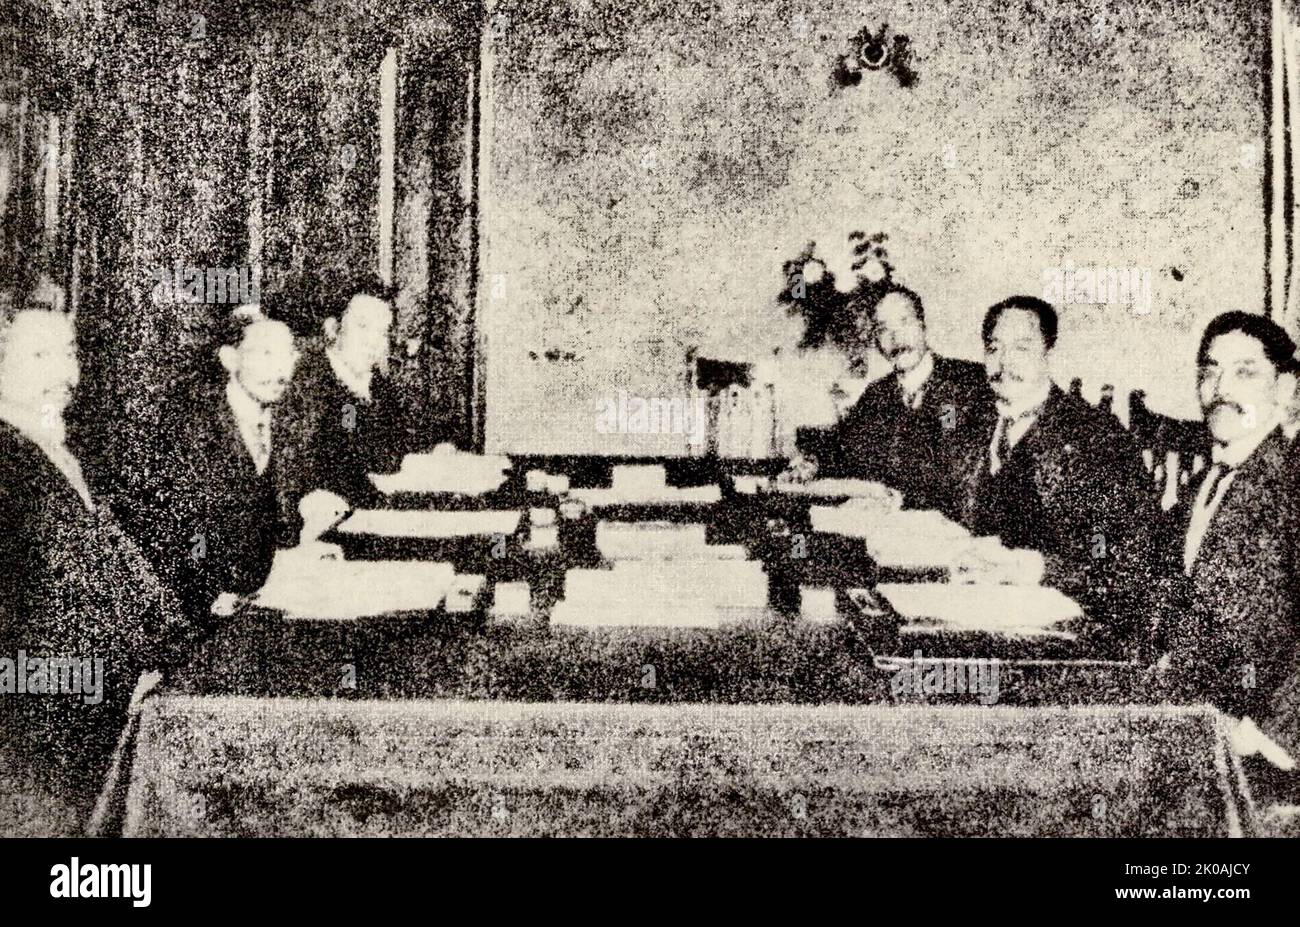 Am 18. Januar 1915 nutzte Japan die Zeit, als die europäischen und amerikanischen Imperialisten im Ersten Weltkrieg keine Zeit hatten, nach Osten zu schauen, und überreichte Yuan Shikais Regierung ein geheimes Dokument, das darauf abzielte, China zu zerstören - den "Japan-China-Vertrag". Der vollständige Text besteht aus einundzwanzig Forderungen, daher wird dieser Vertrag normalerweise als „einundzwanzig“ bezeichnet. Abgebildet ist die Szene, in der der Vertrag unterzeichnet wird. Stockfoto